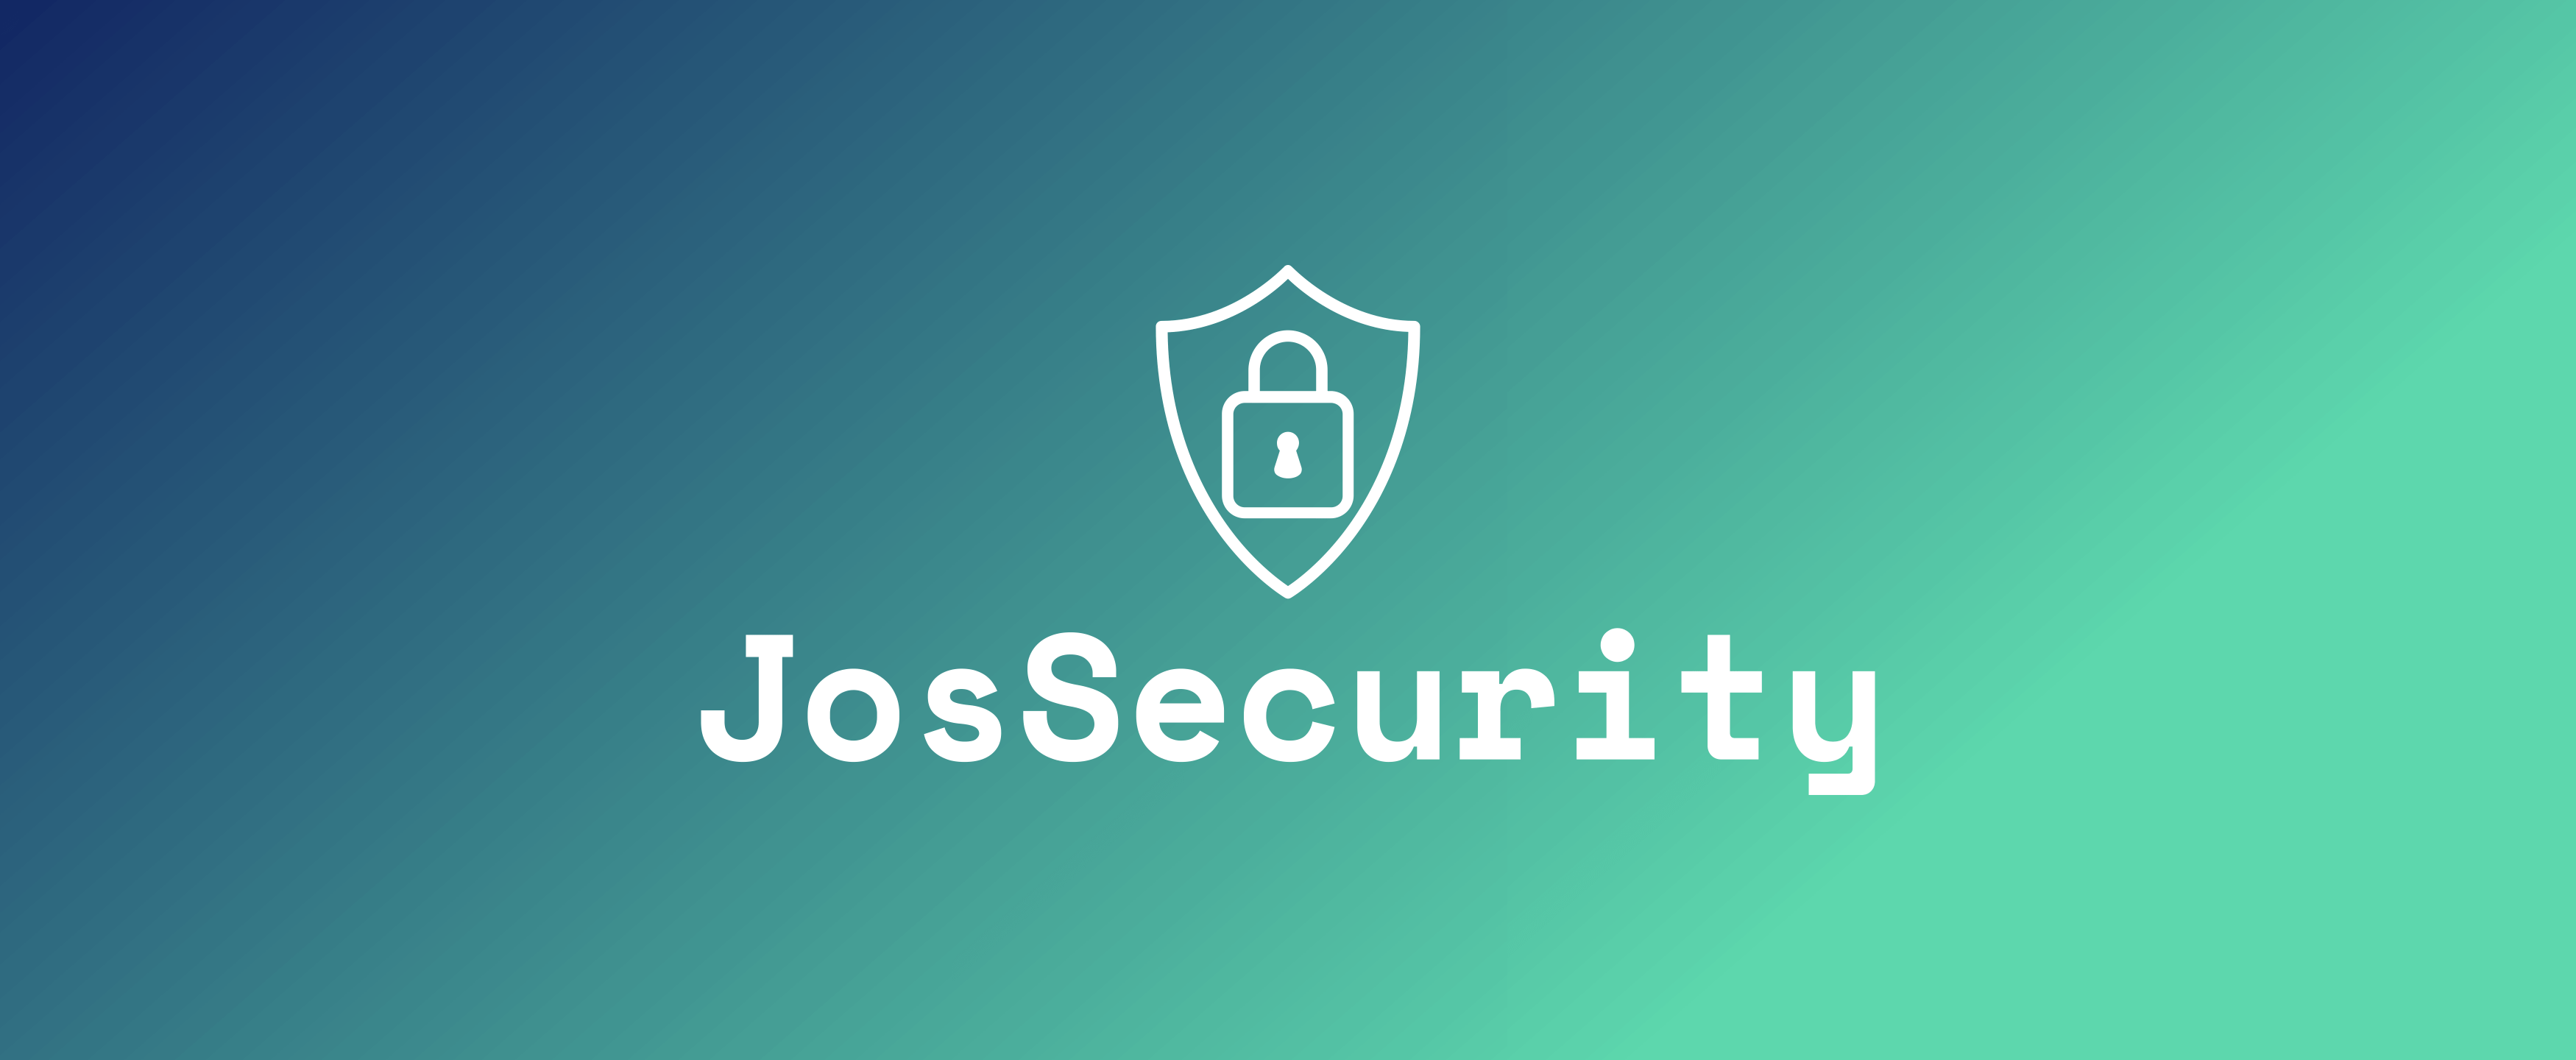 JosSecurity seguridad a tu alcance.